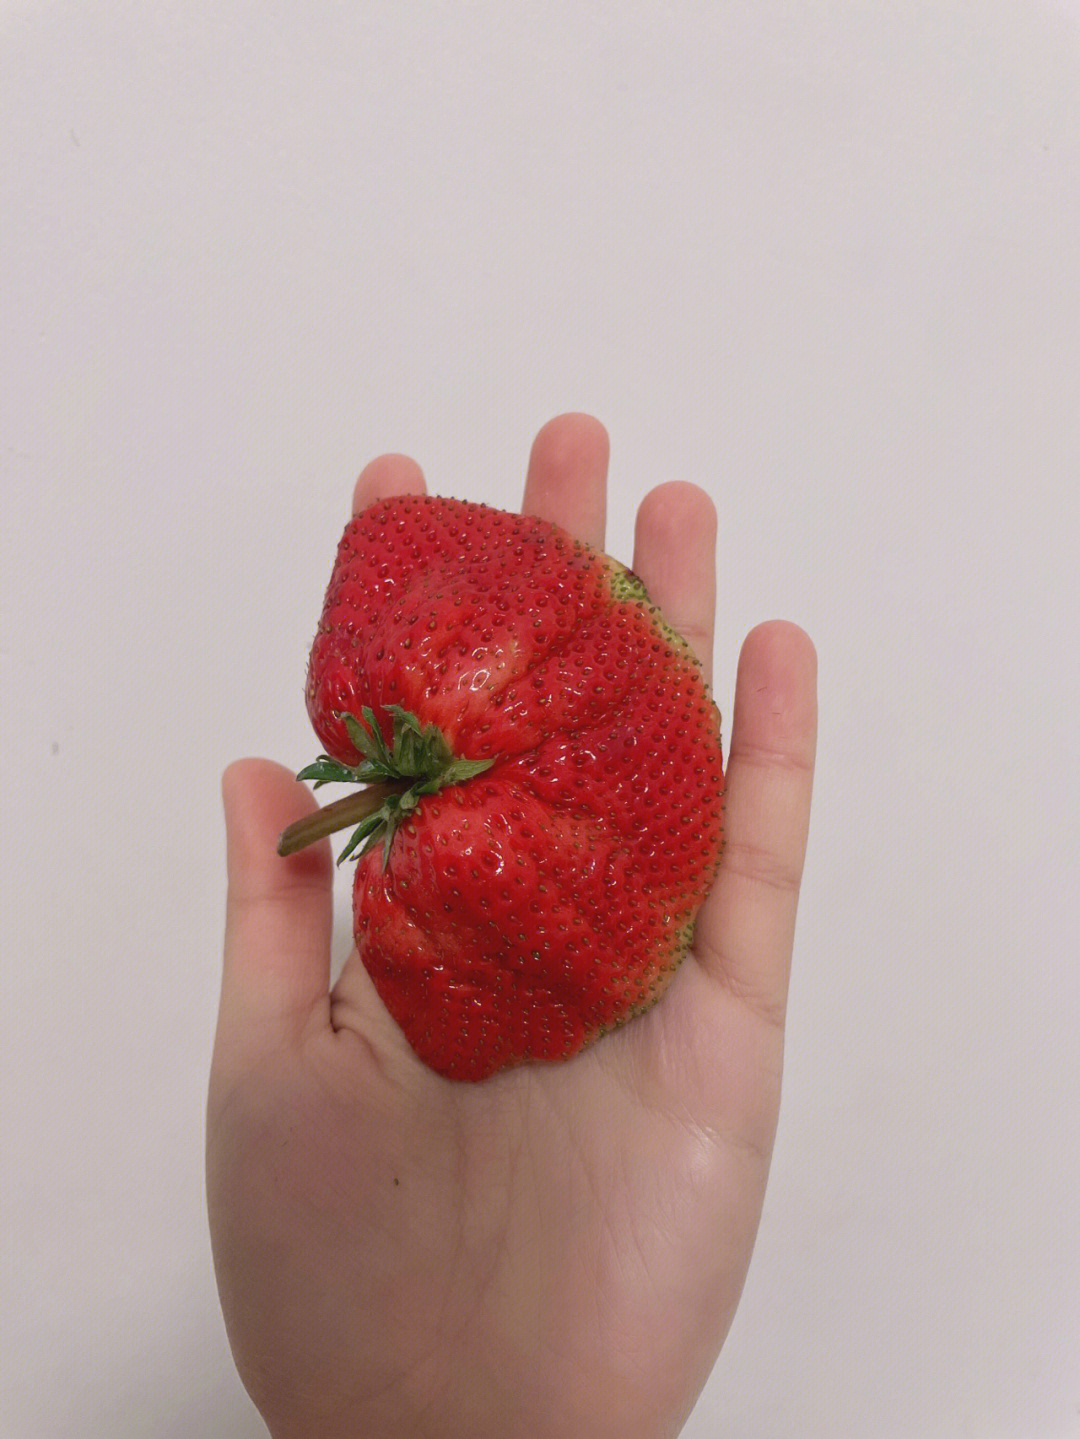 多倍体草莓空心图片